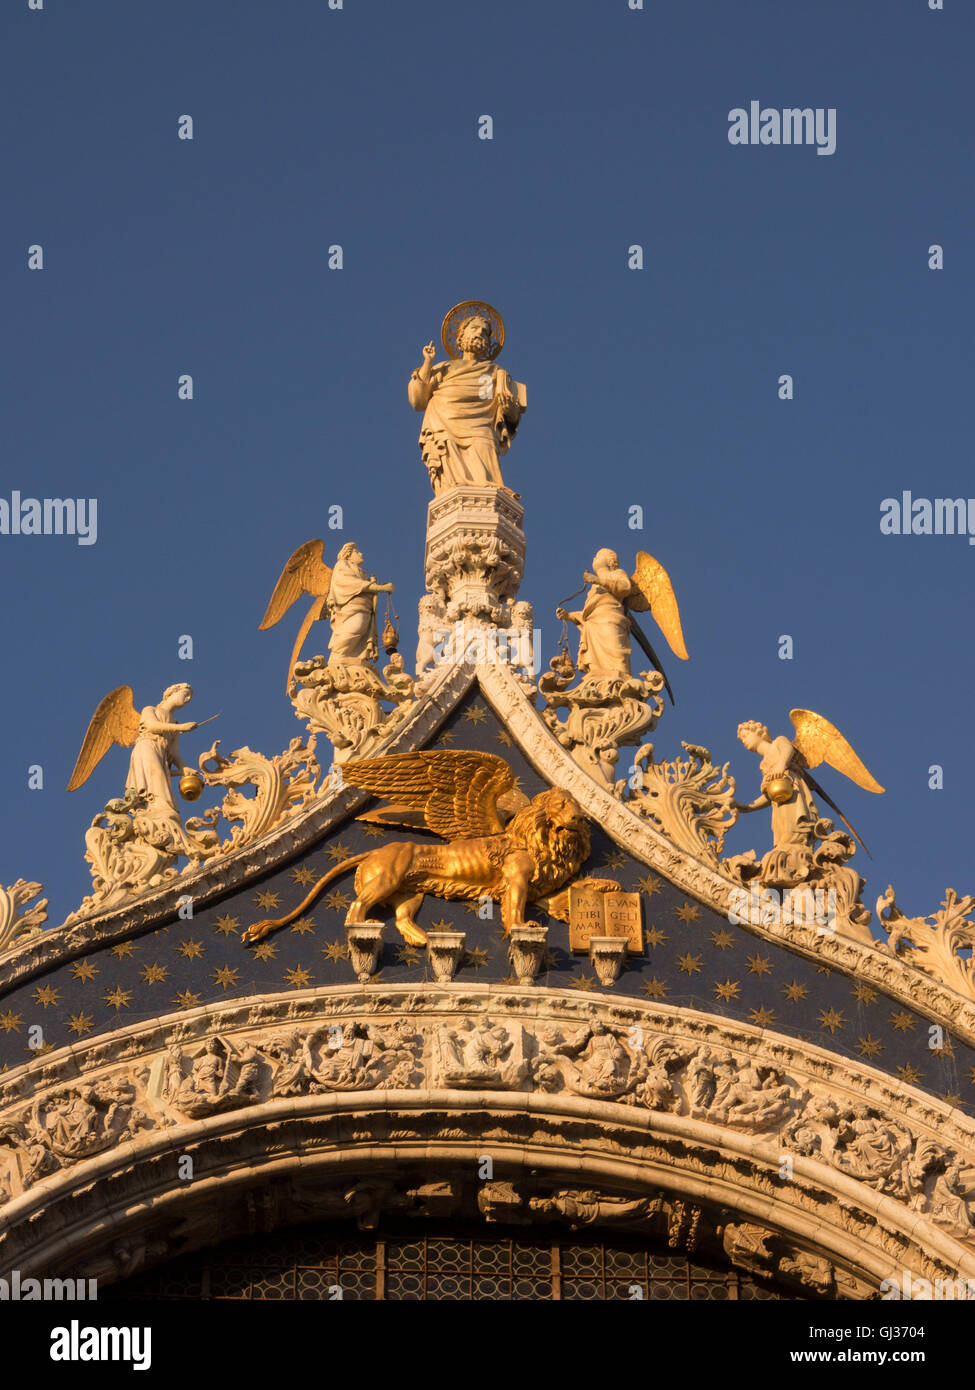 Dettaglio del timpano mostra San Marco con angeli. Sotto è un leone alato, il simbolo del santo e di Venezia. Foto Stock